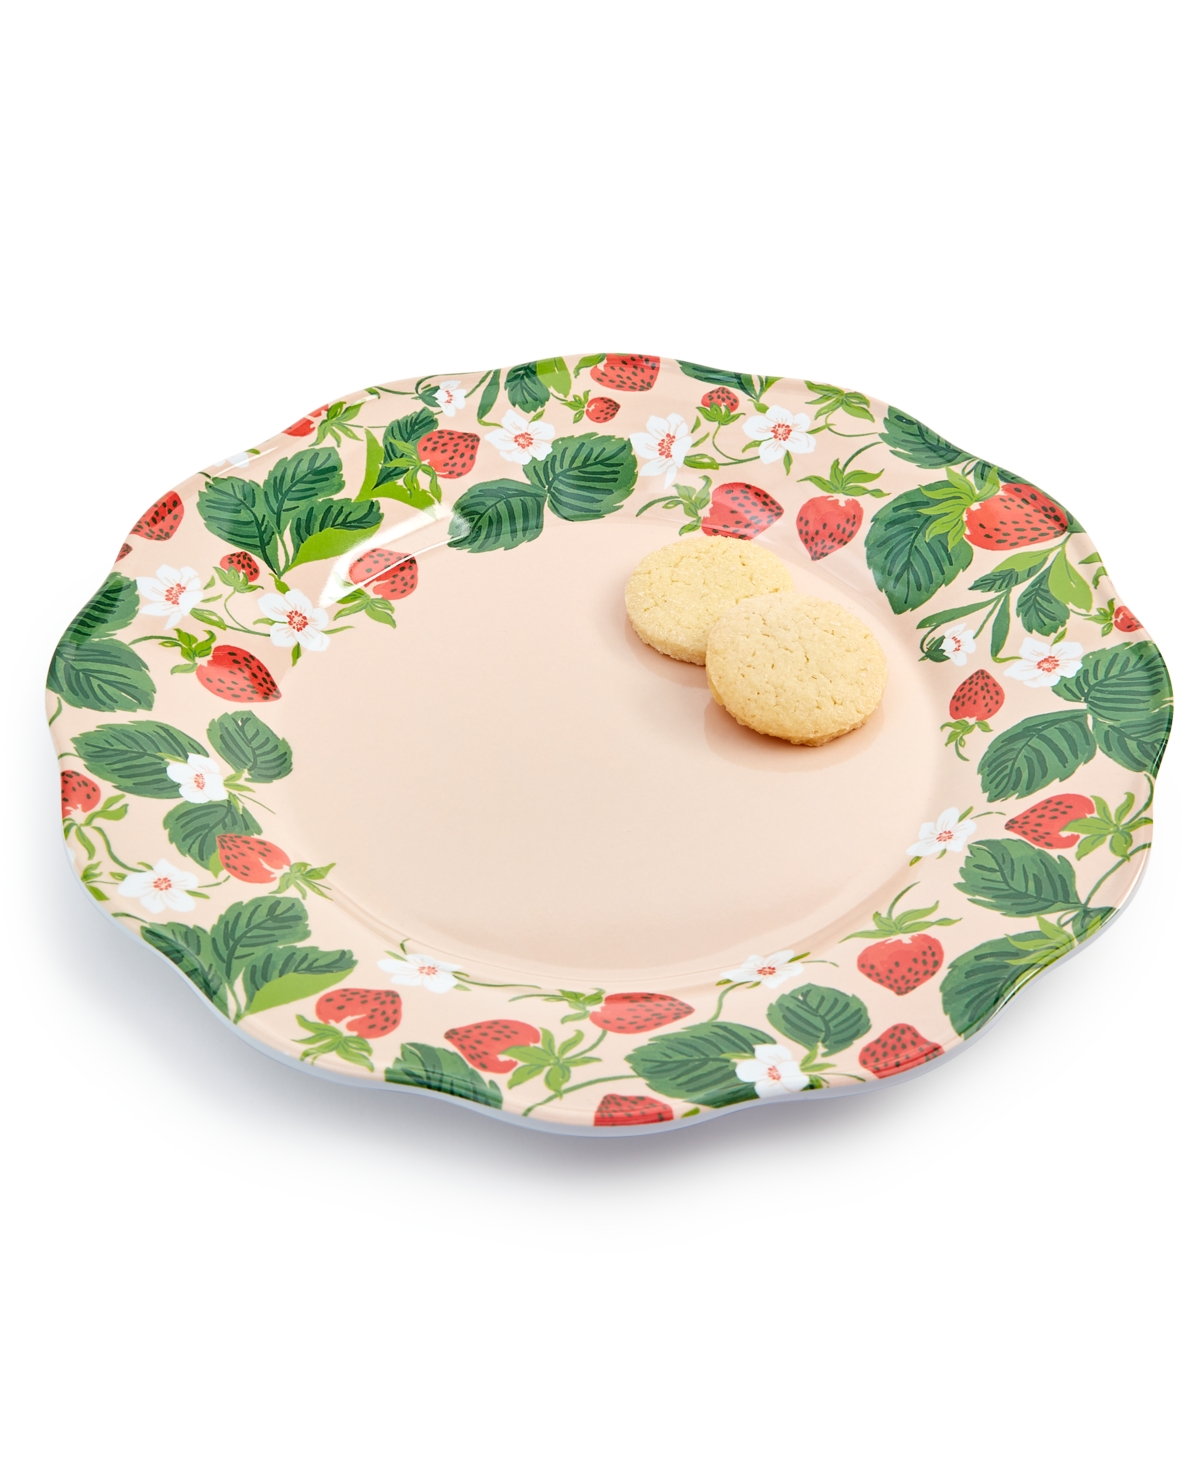 Flower Show Melamine Dinner Plate, Created for Macy's - Strawberry